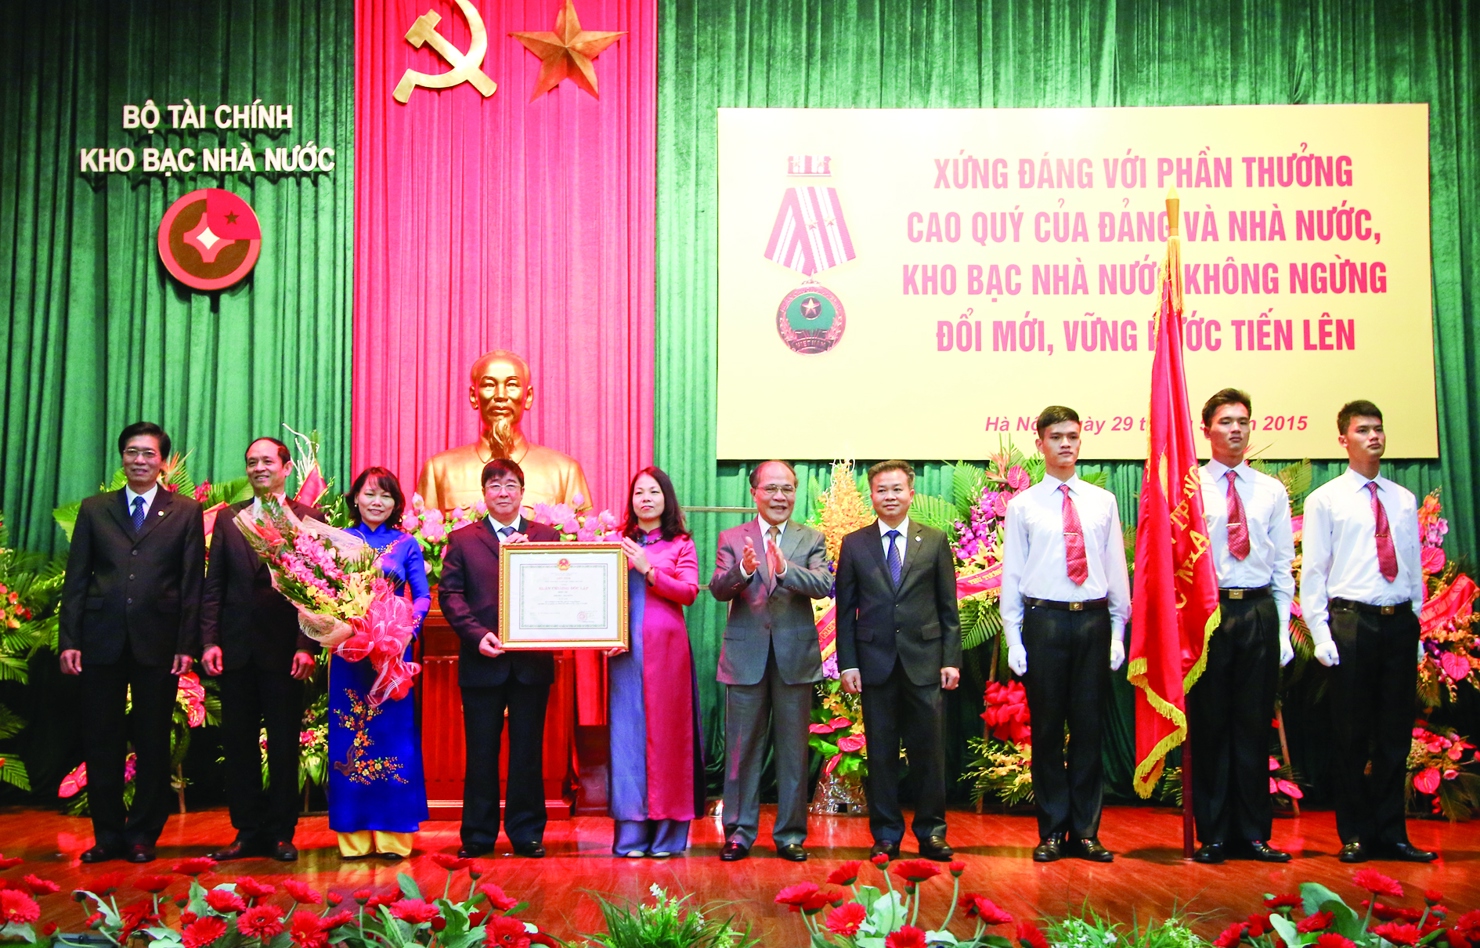 Chủ tịch Quốc hội Nguyễn Sinh Hùng  trao tặng Huân chương Độc lập hạng Nhì cho hệ thống Kho bạc Nhà nước (năm 2015).